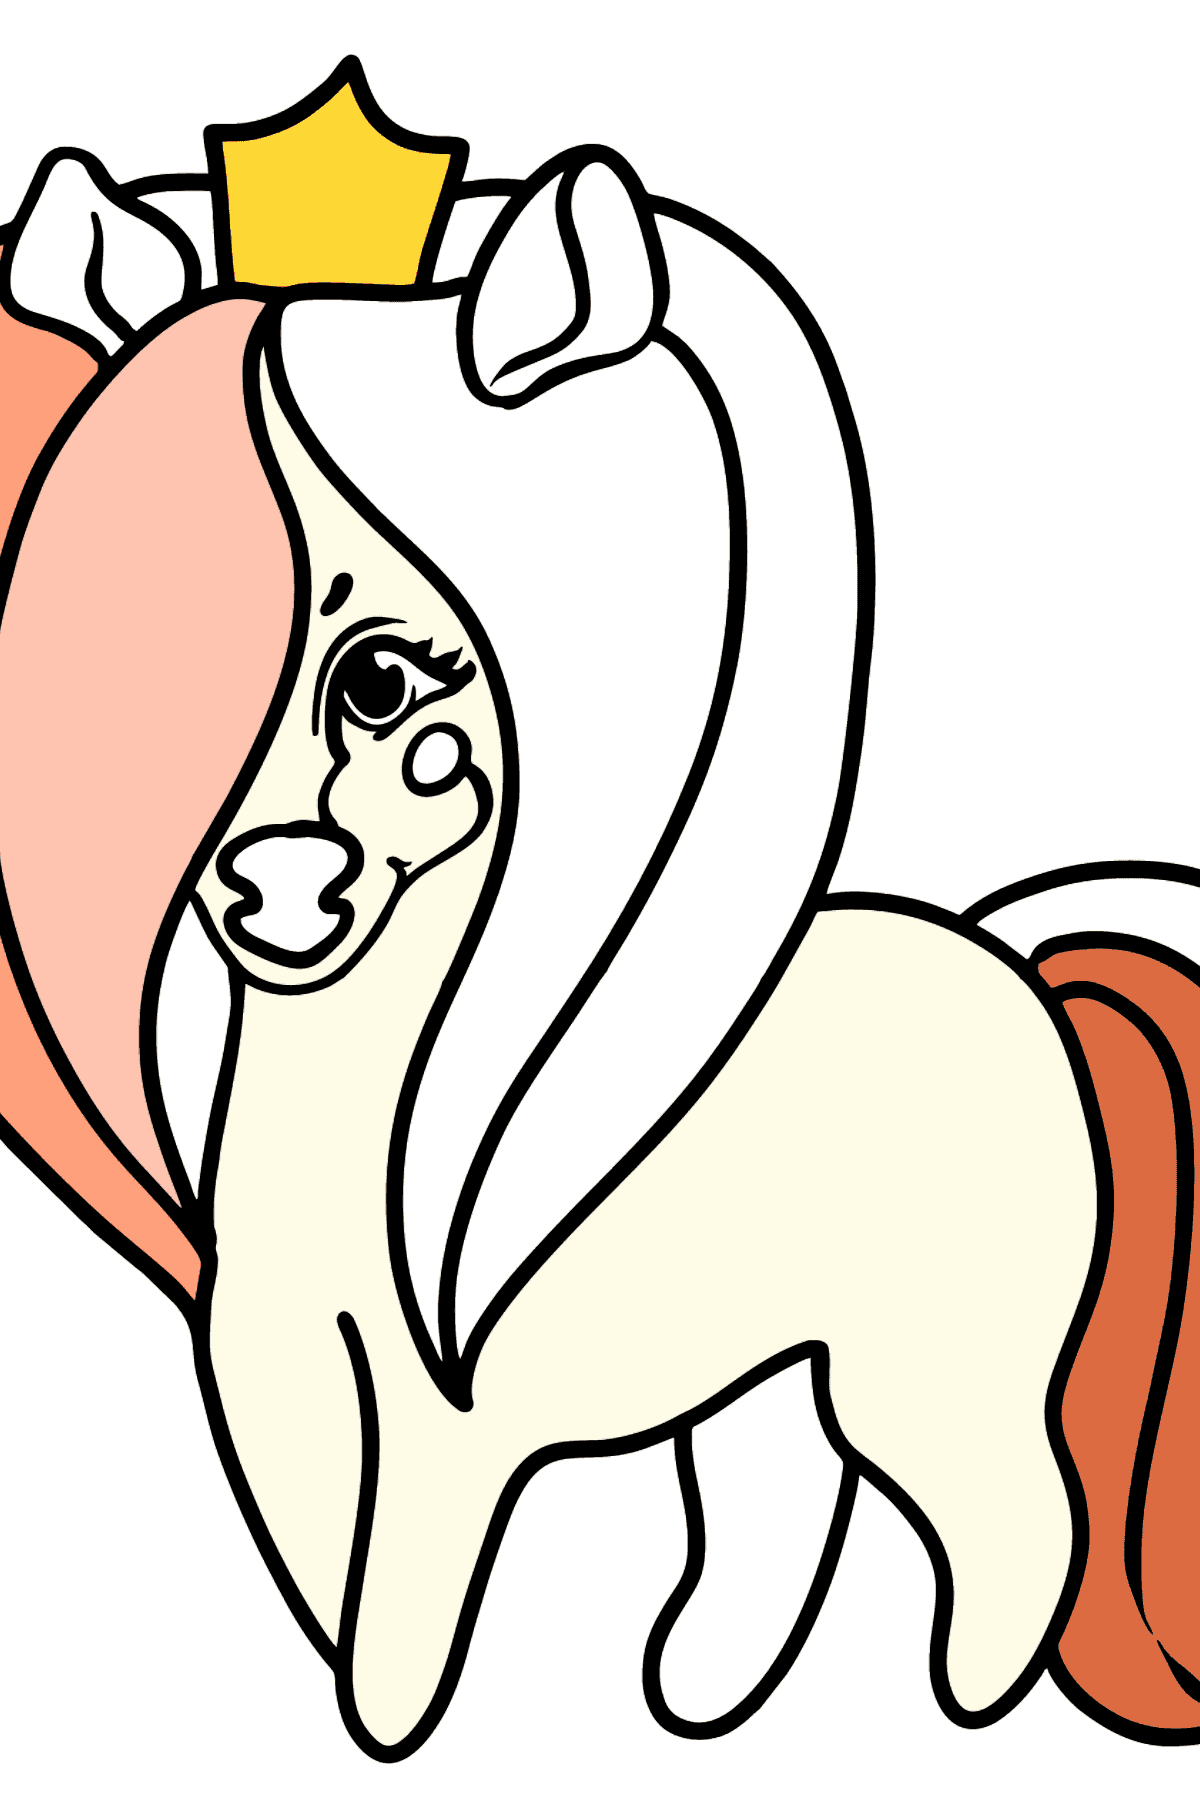 Disegno di Principessa pony da colorare - Disegni da colorare per bambini